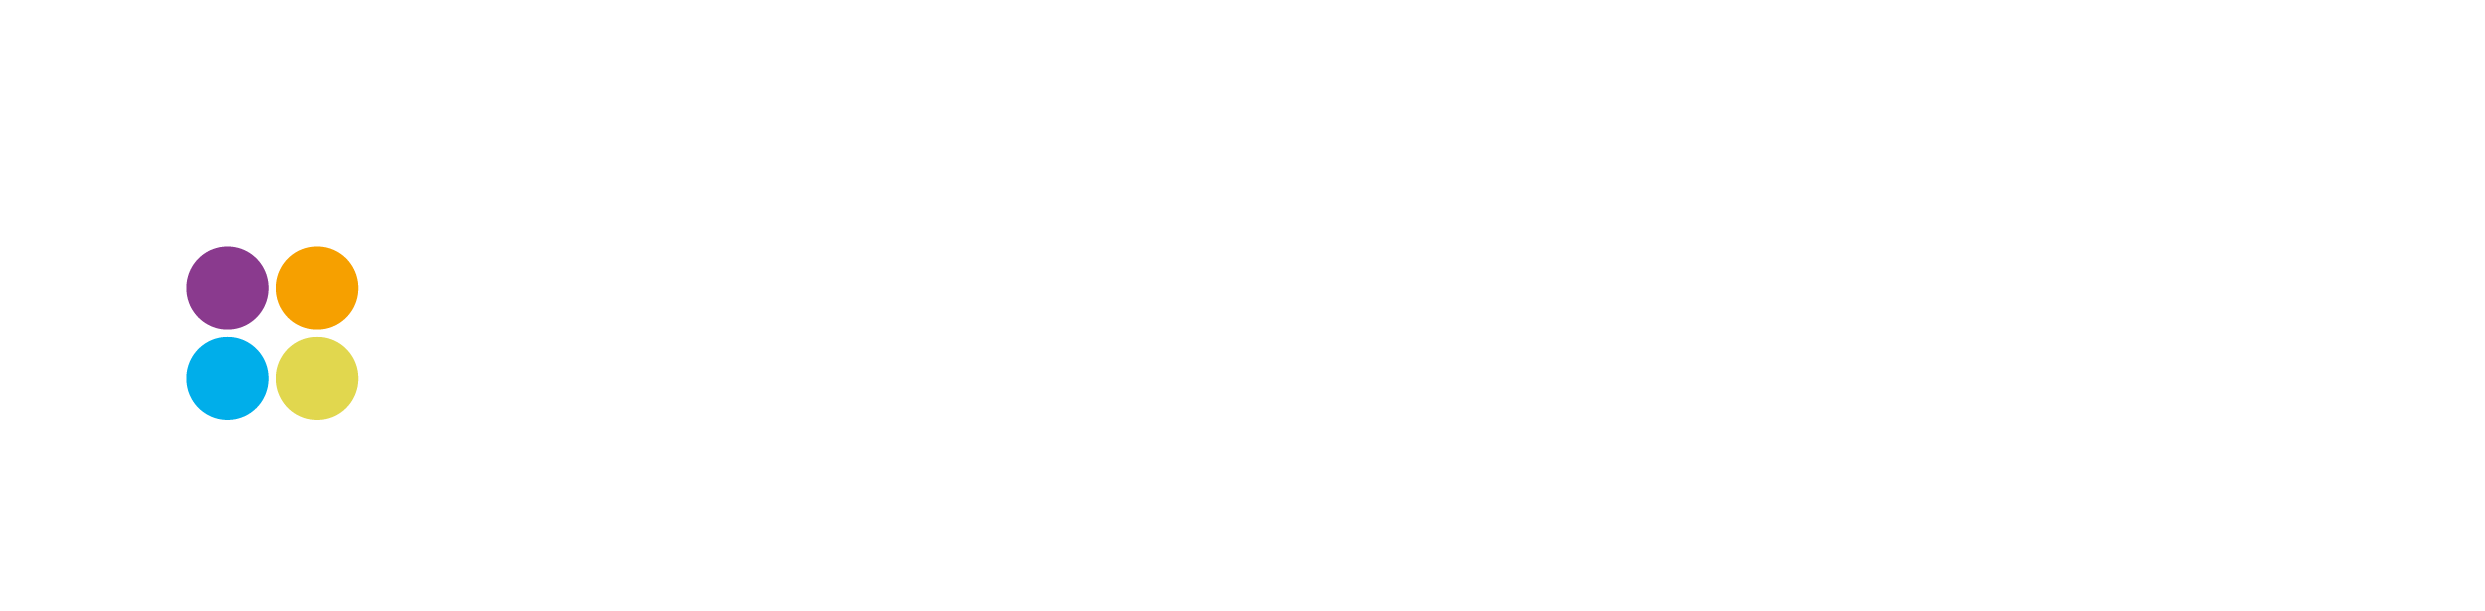 HomeHunt logo